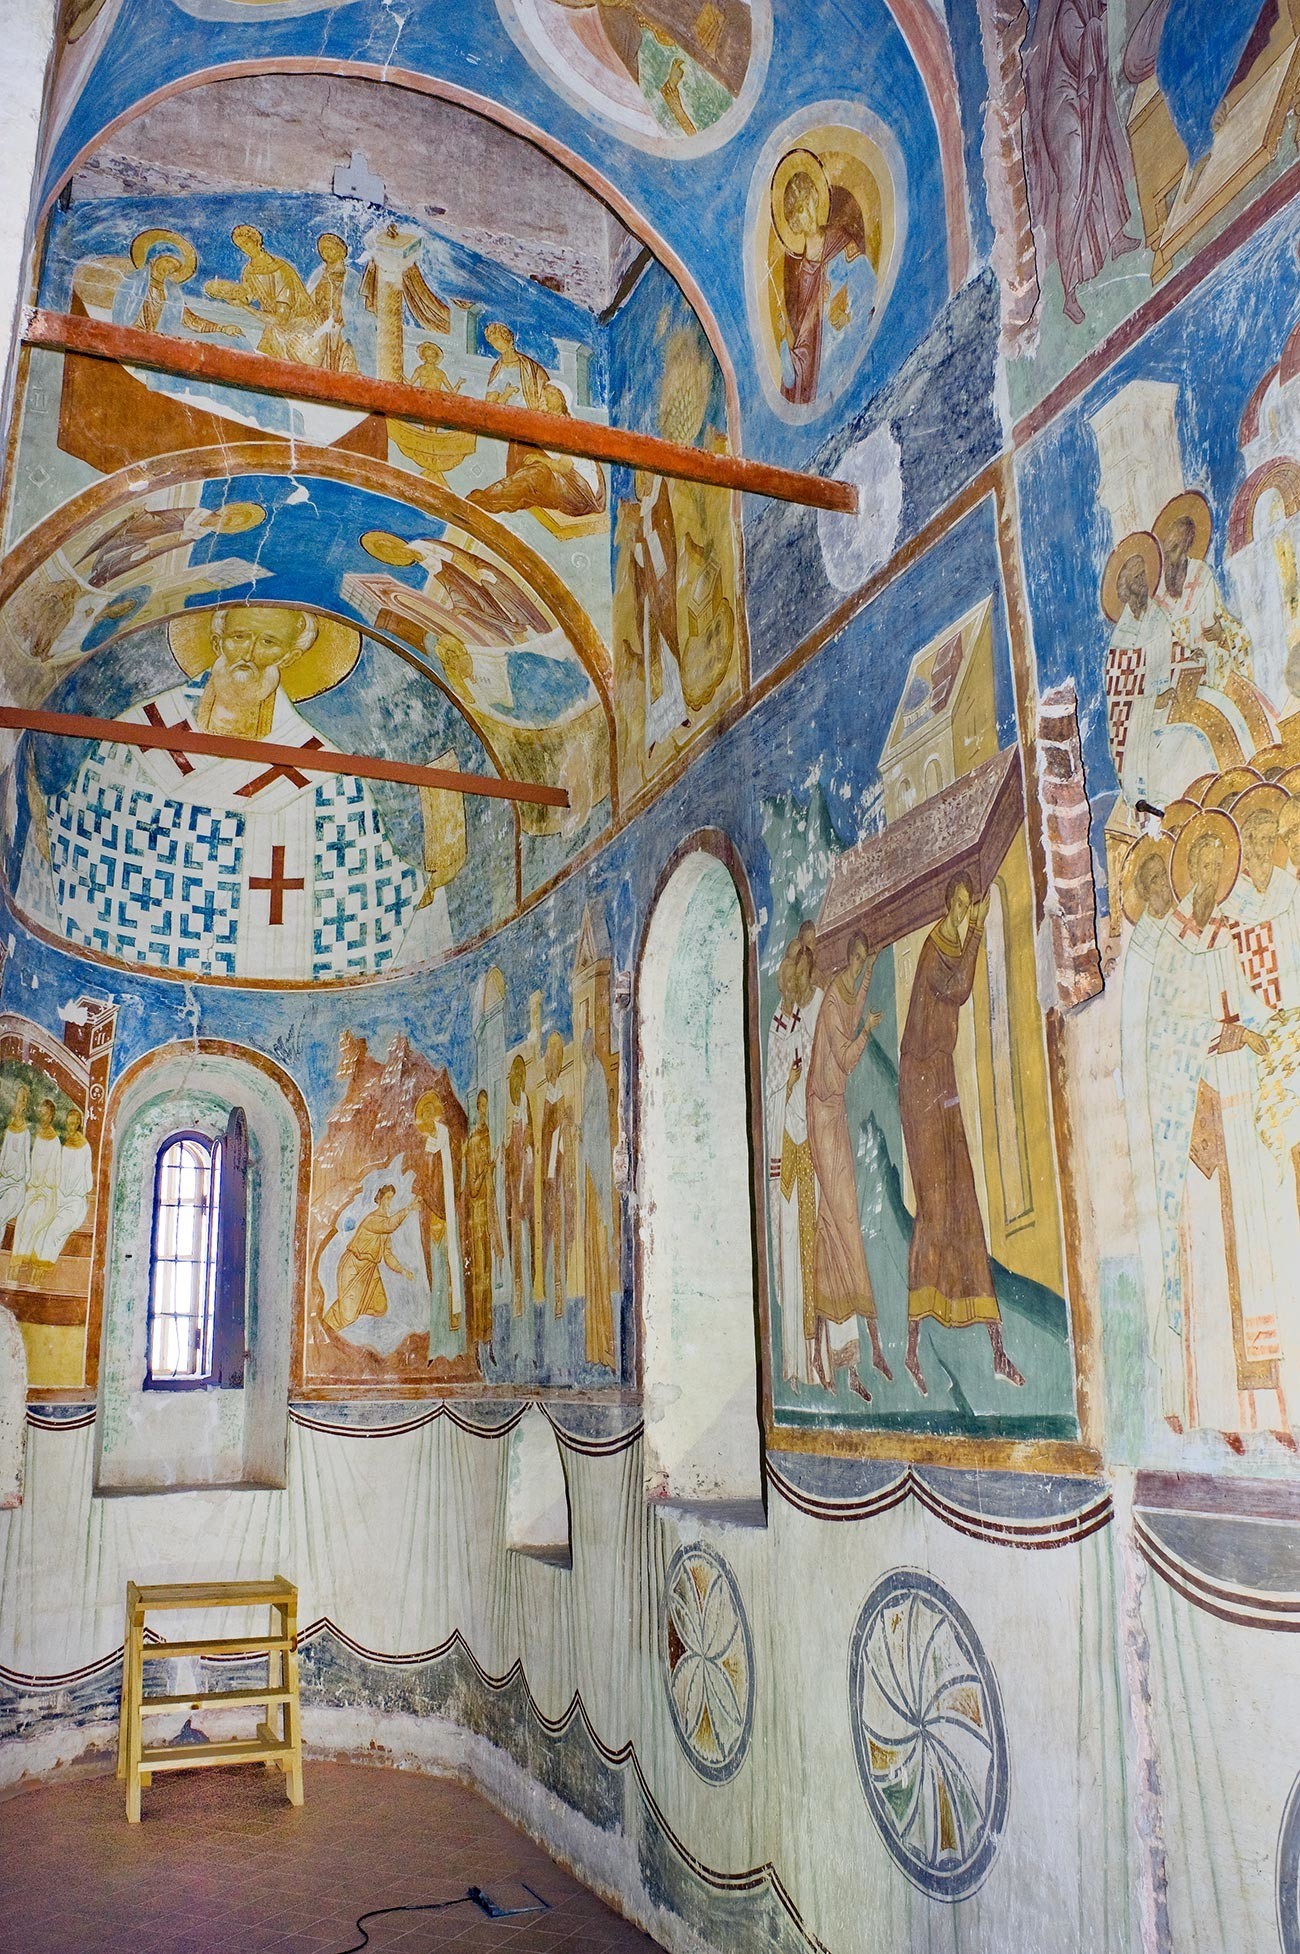 Katedrala rojstva Device Marije. Južna apsida s freskami sv. Nikolaja. 1. junij 2014
